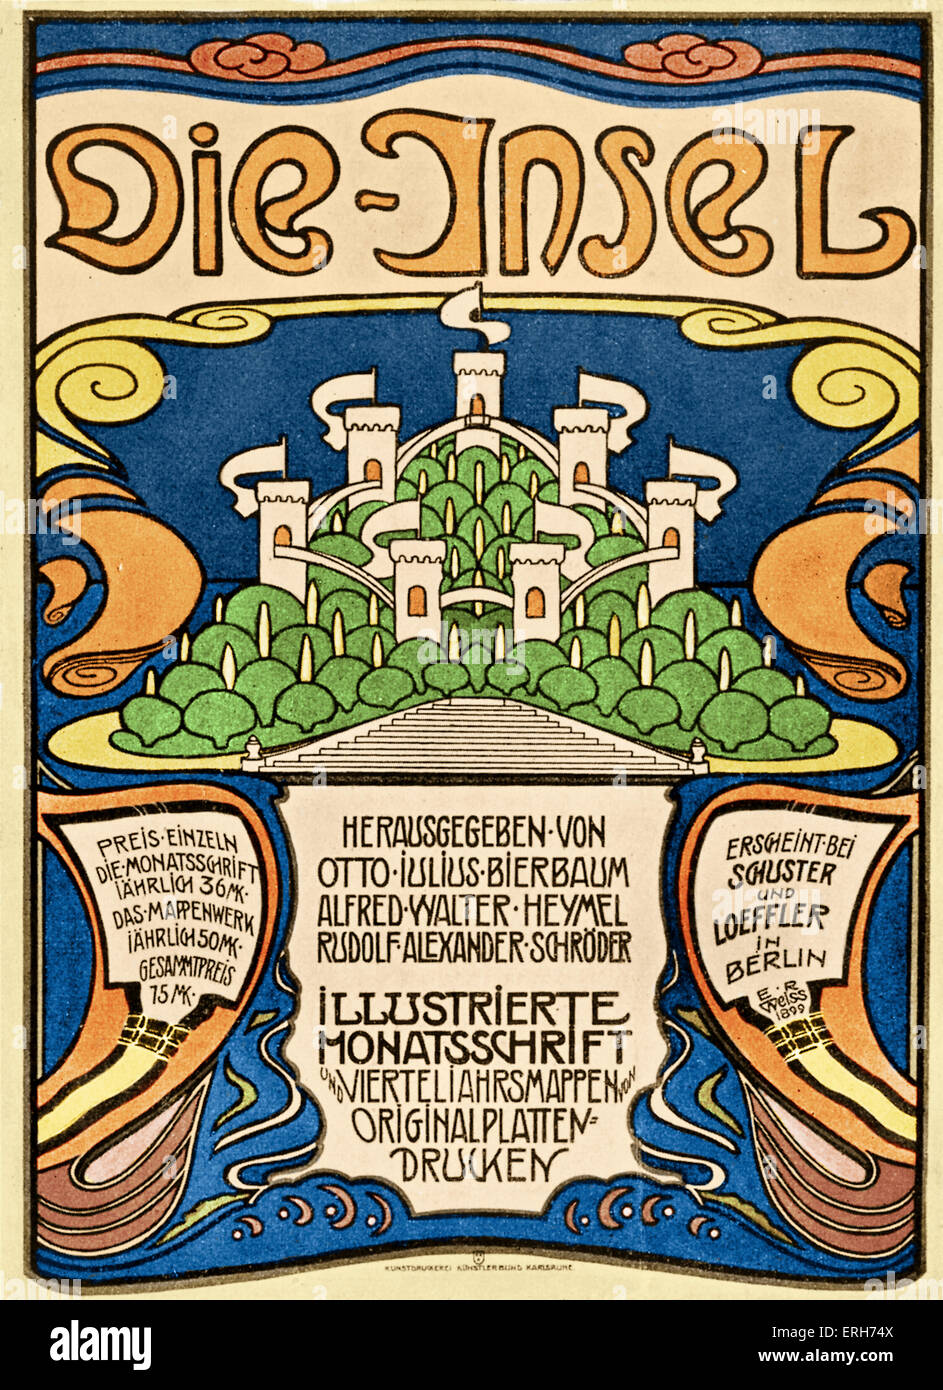 Die Insel ( l'île) - Revue d'art et littéraire allemand publié à Munich à partir de 1899 par Otto Julius Bierbaum, Alfred Banque D'Images